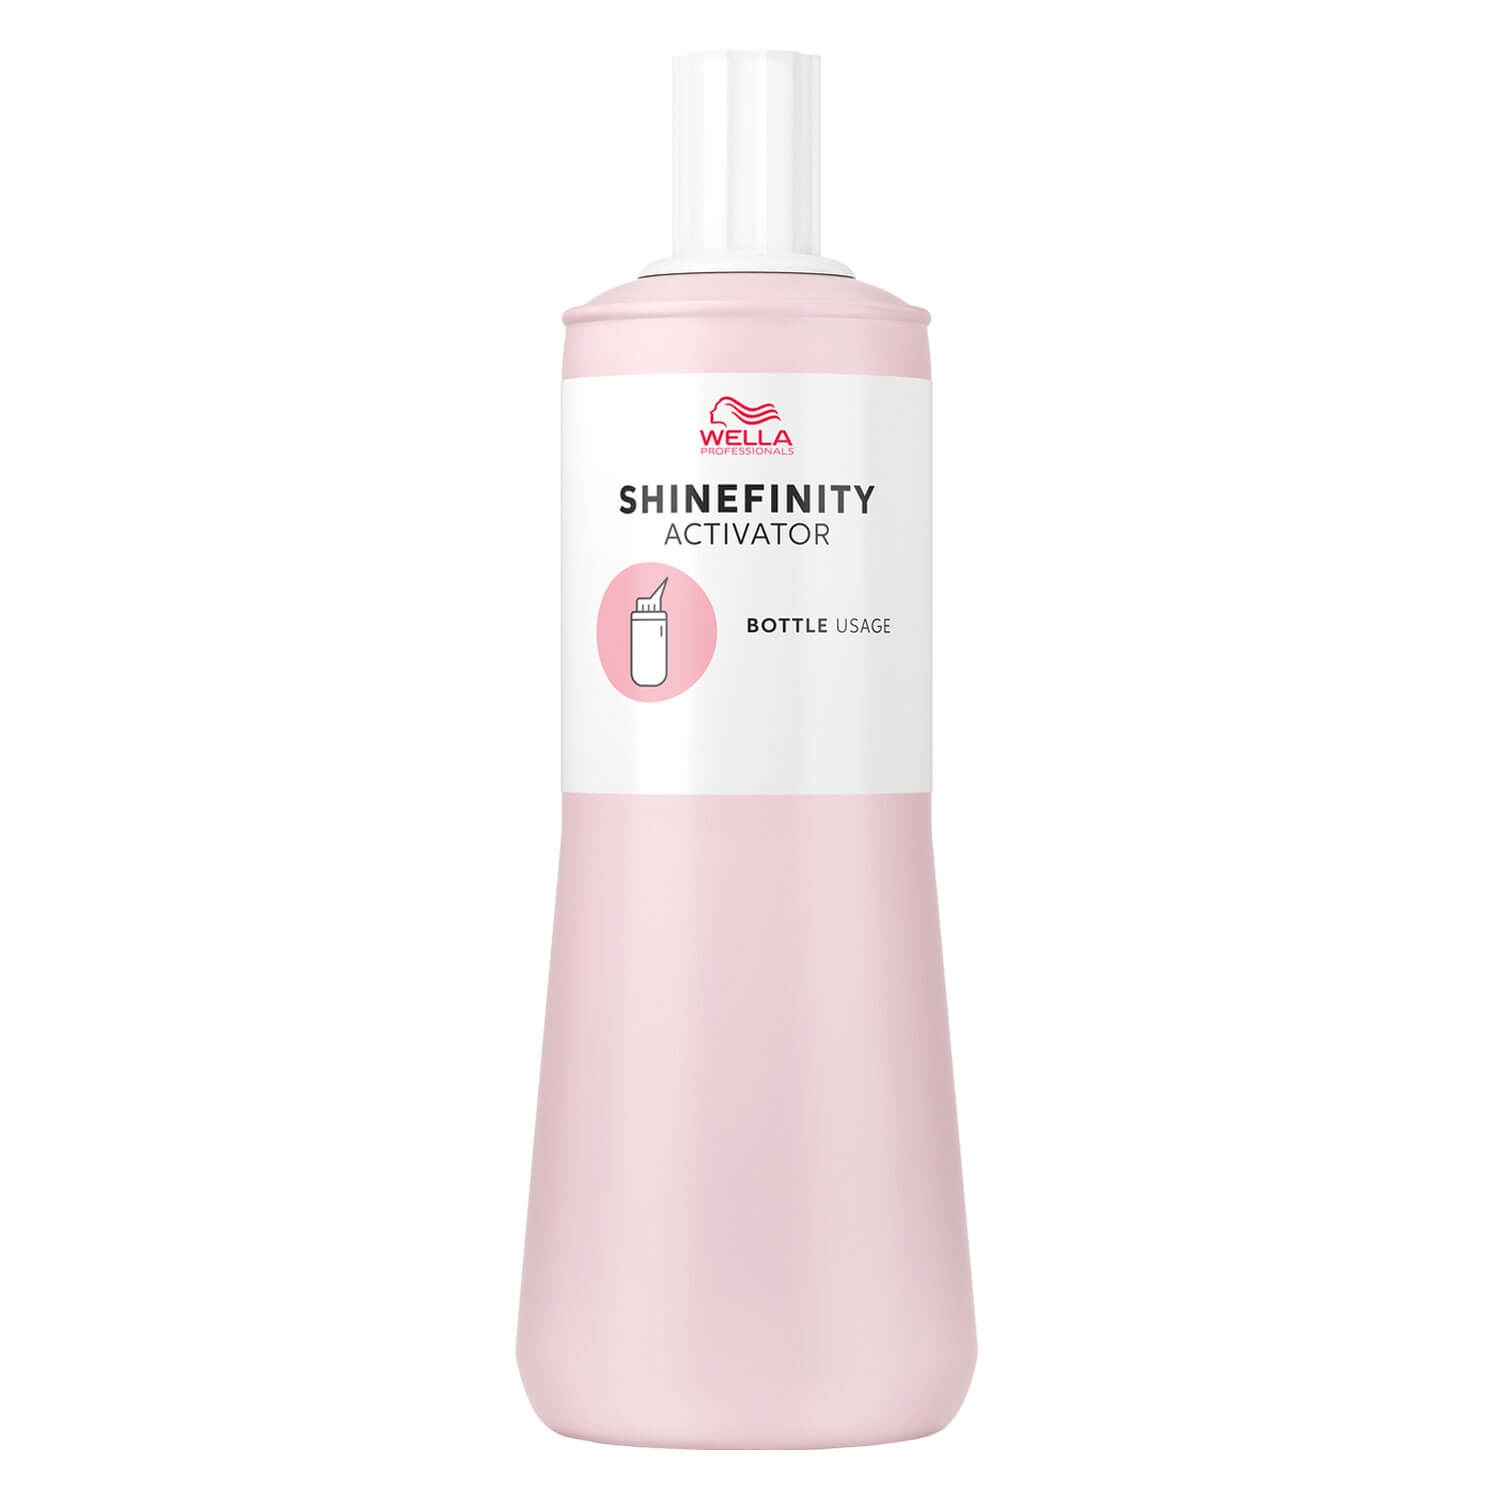 Produktbild von Shinefinity - Activator Bottle Usage 2%